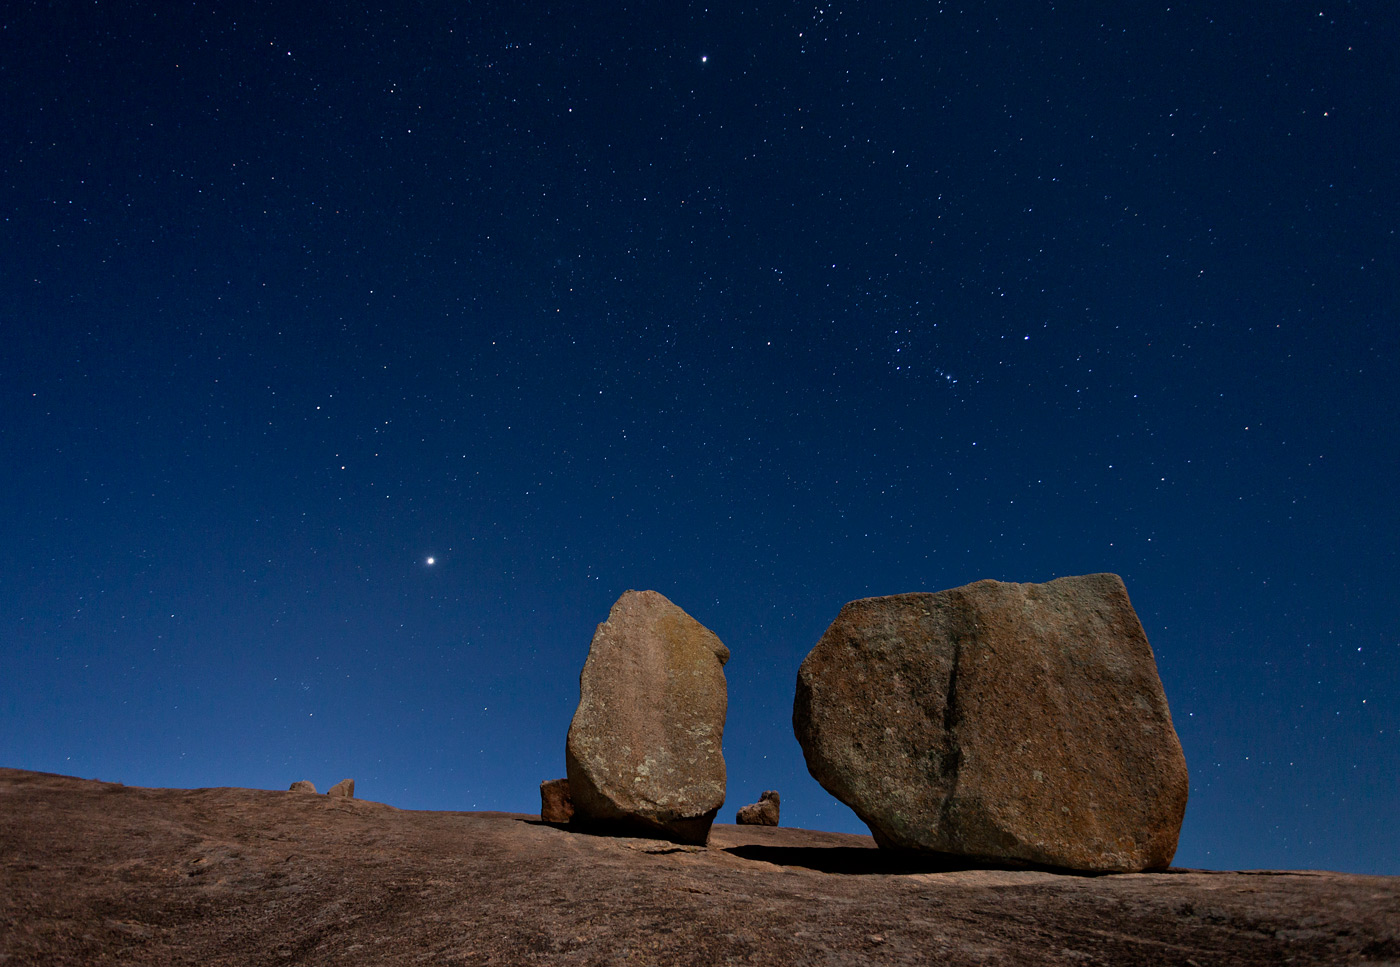 Enchanted-Rock-ABP-Boulders-Stars.jpg